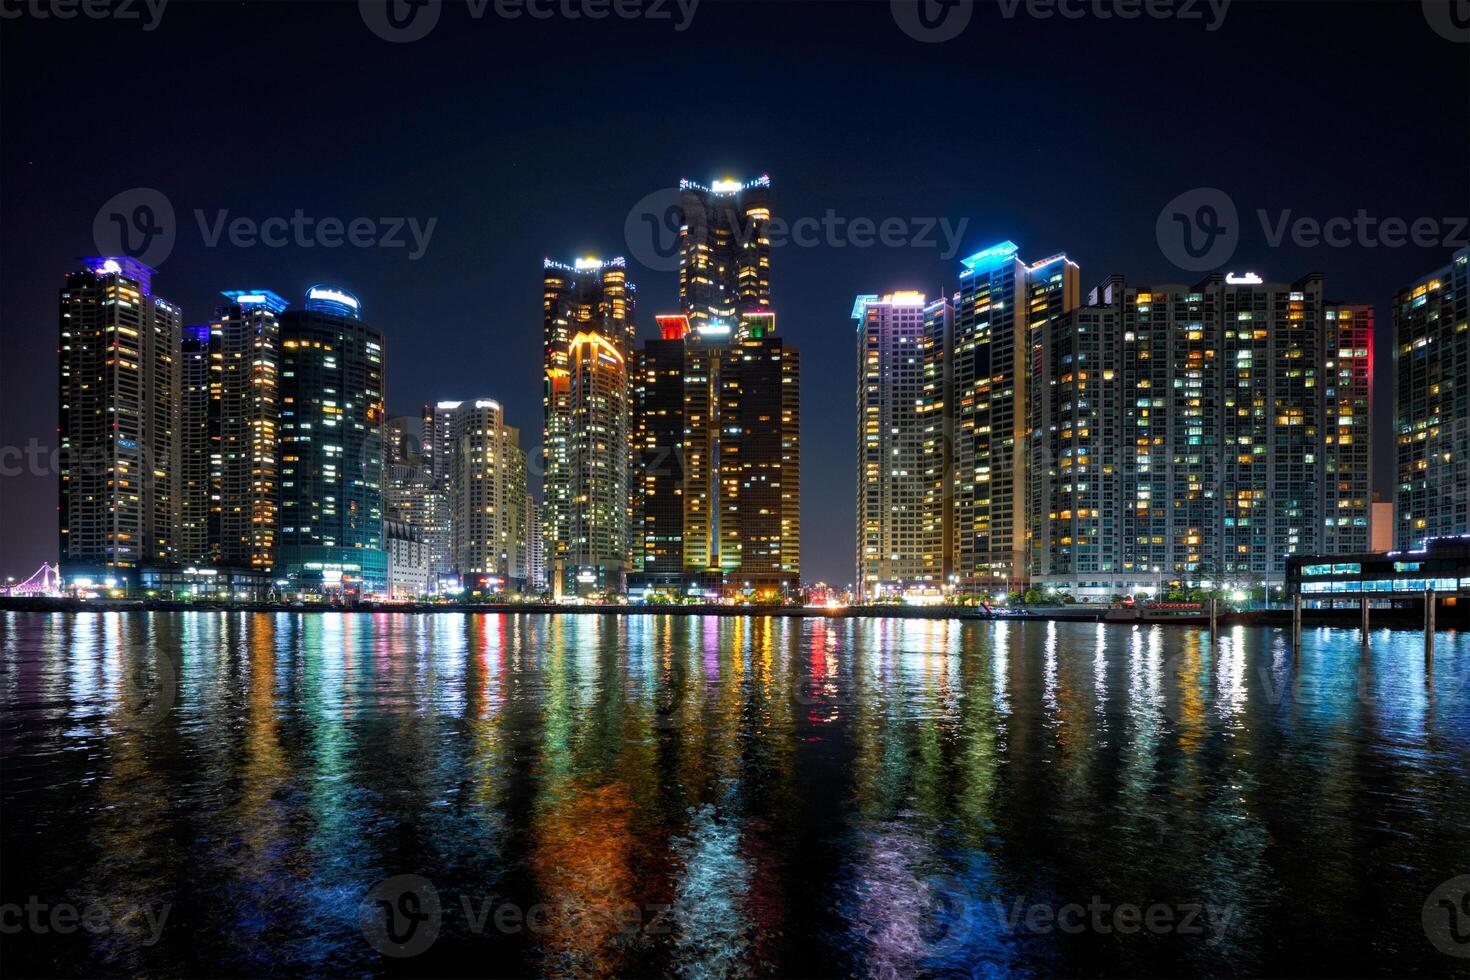 Busan Yachthafen Stadt Wolkenkratzer beleuchtet im Nacht foto